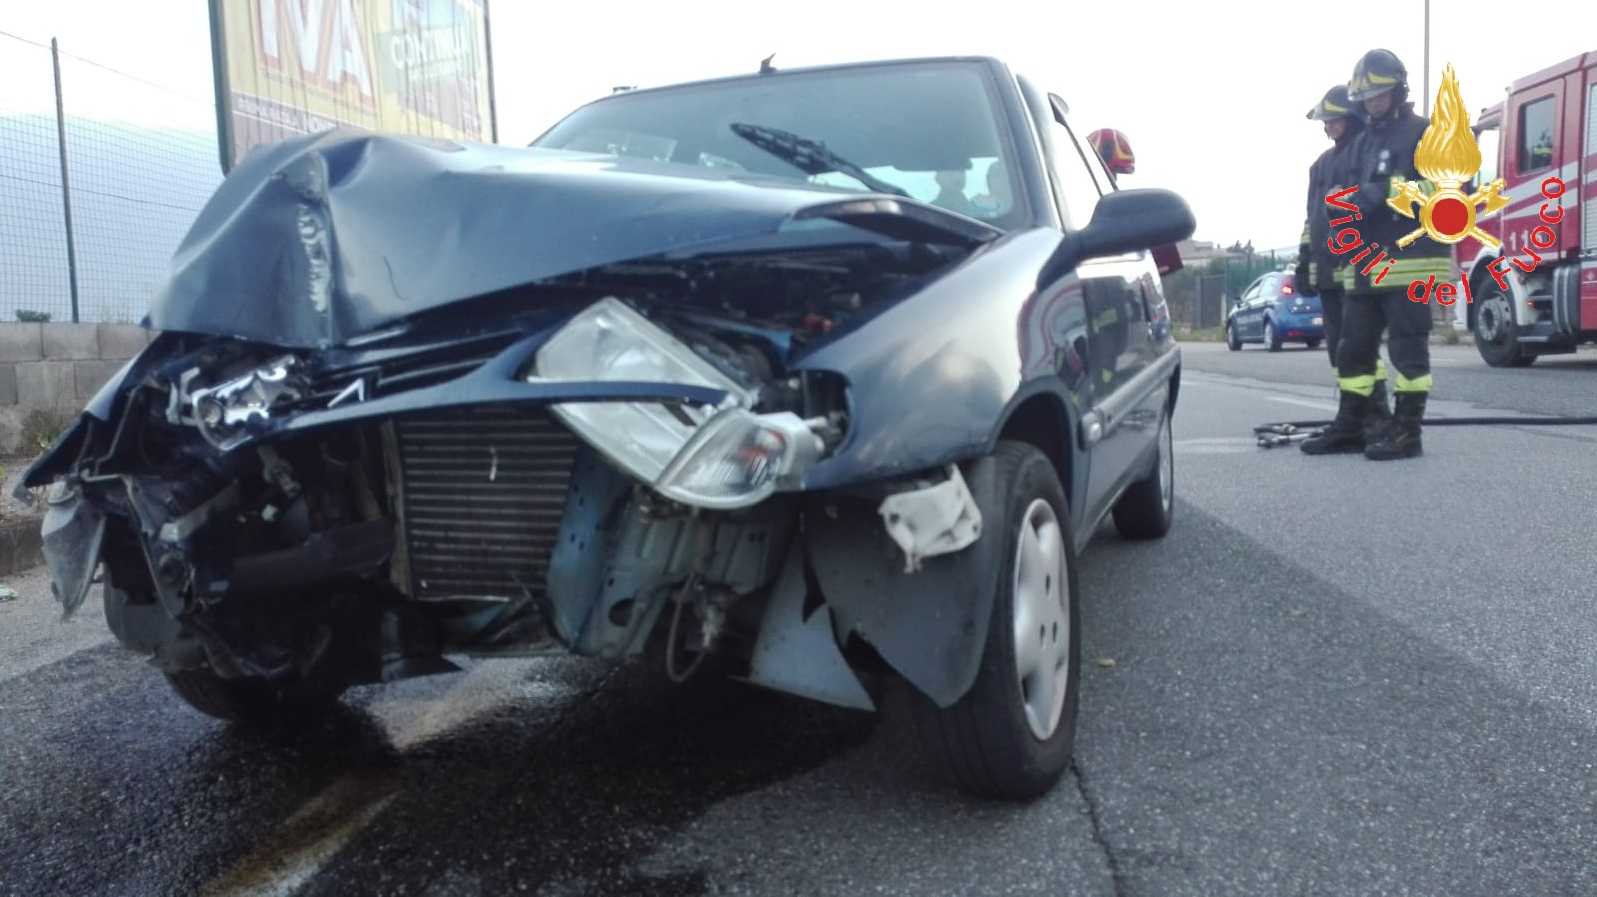 Incidente stradale: Auto sbanda e finisce contro un palo della luce intervento dei VVF e suem118